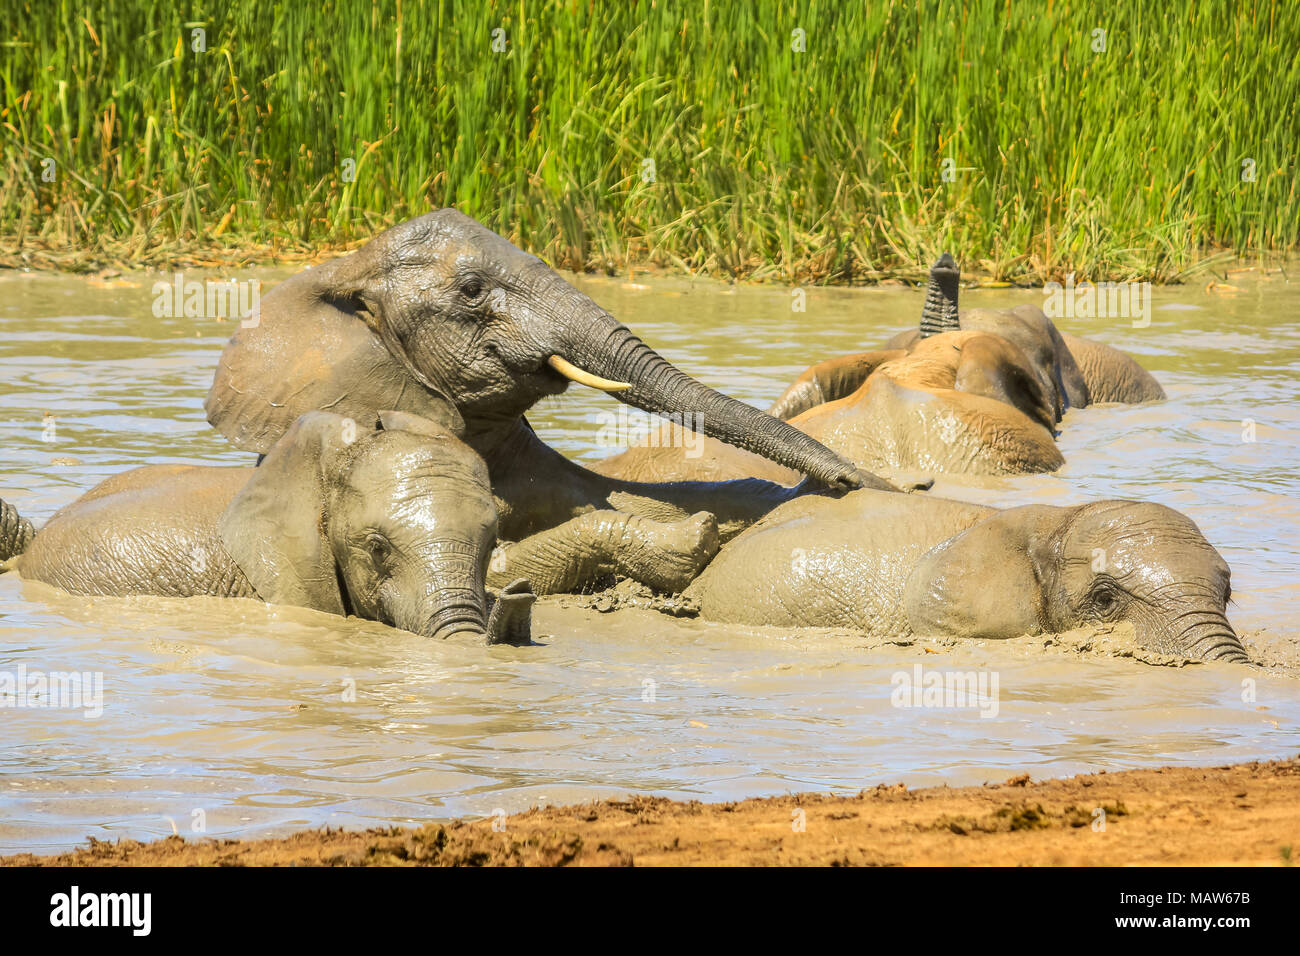 Nahaufnahme des Afrikanischen Elefanten baden im Schlamm von einem Pool im Sommer, um die Körpertemperatur zu senken. Addo Elephant National Park, Eastern Cape, Südafrika. Stockfoto